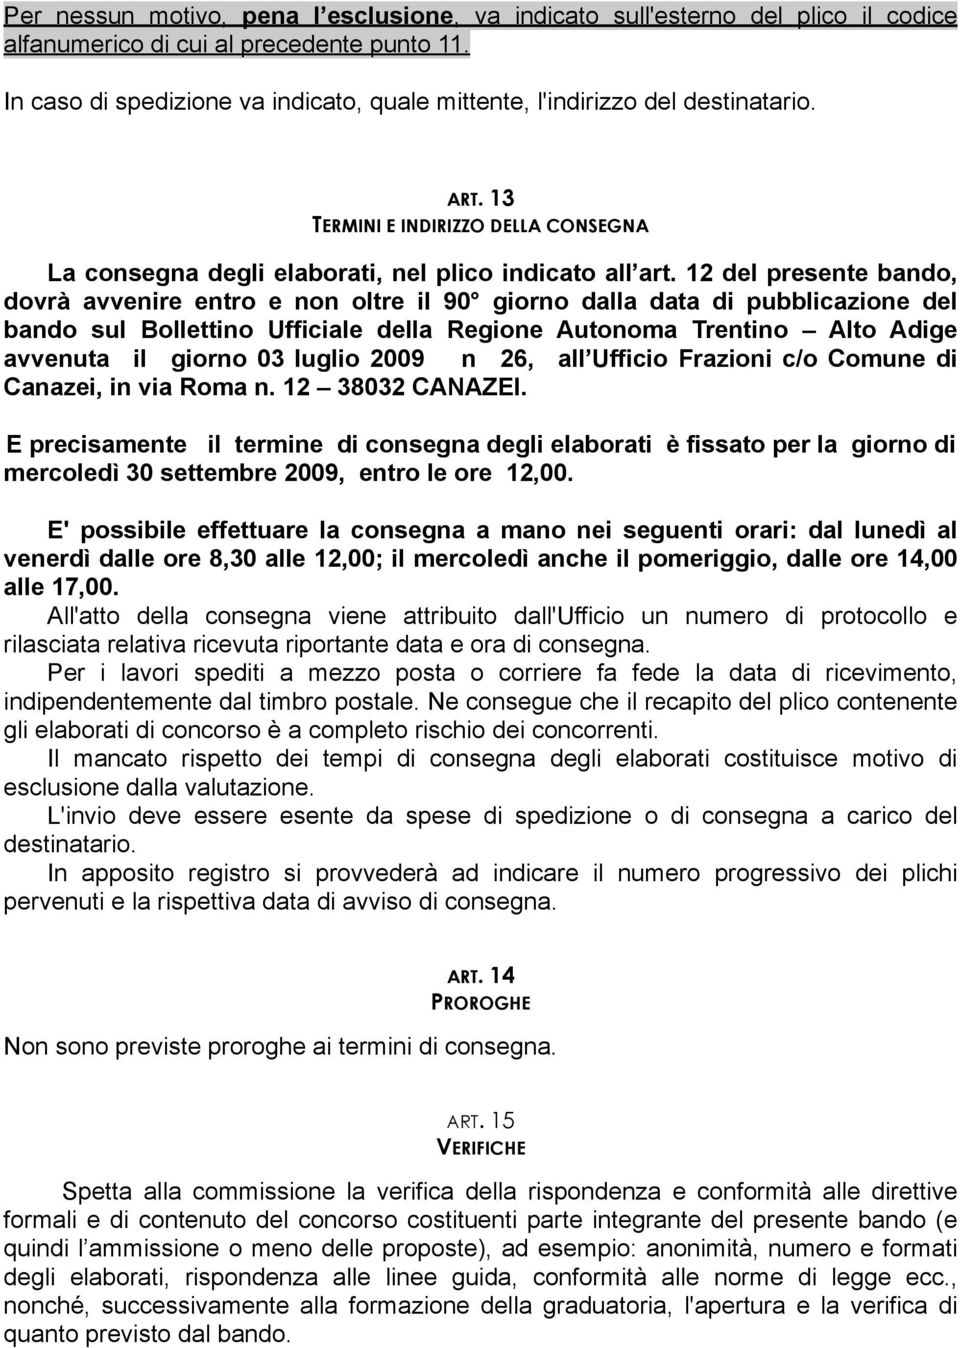 12 del presente bando, dovrà avvenire entro e non oltre il 90 giorno dalla data di pubblicazione del bando sul Bollettino Ufficiale della Regione Autonoma Trentino Alto Adige avvenuta il giorno 03